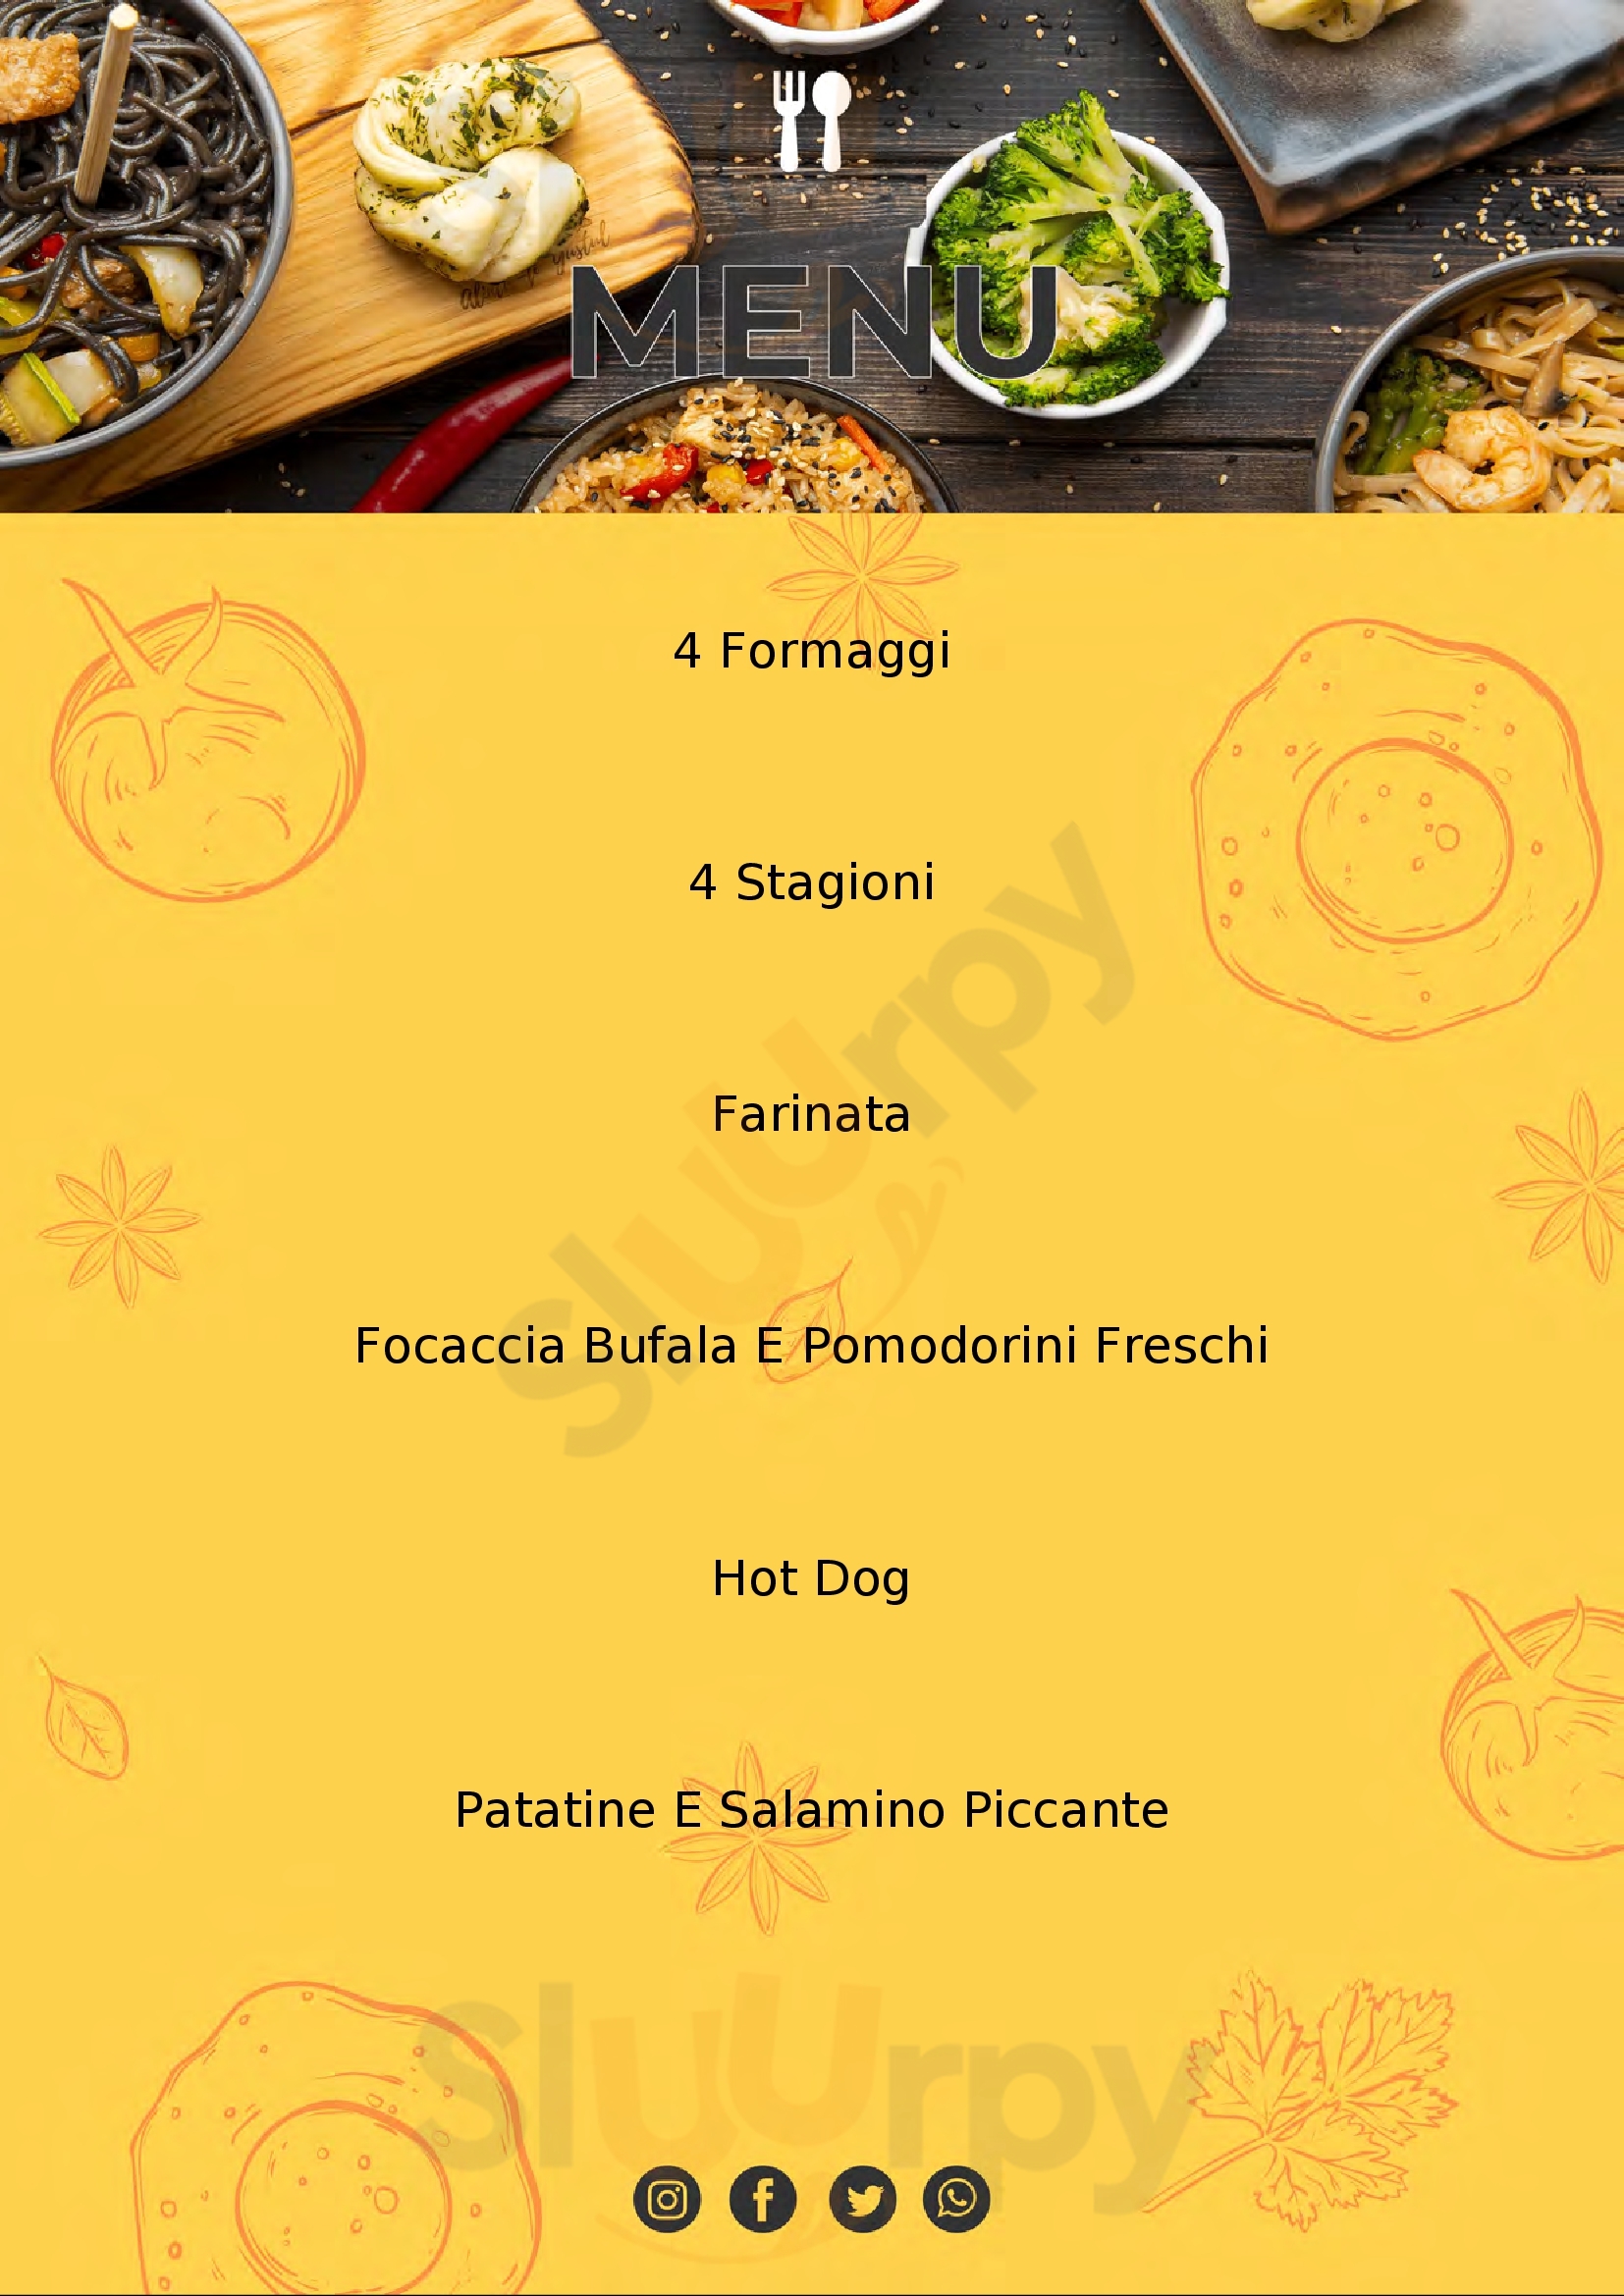 EuroPizza Mimmo Borgo San Dalmazzo menù 1 pagina